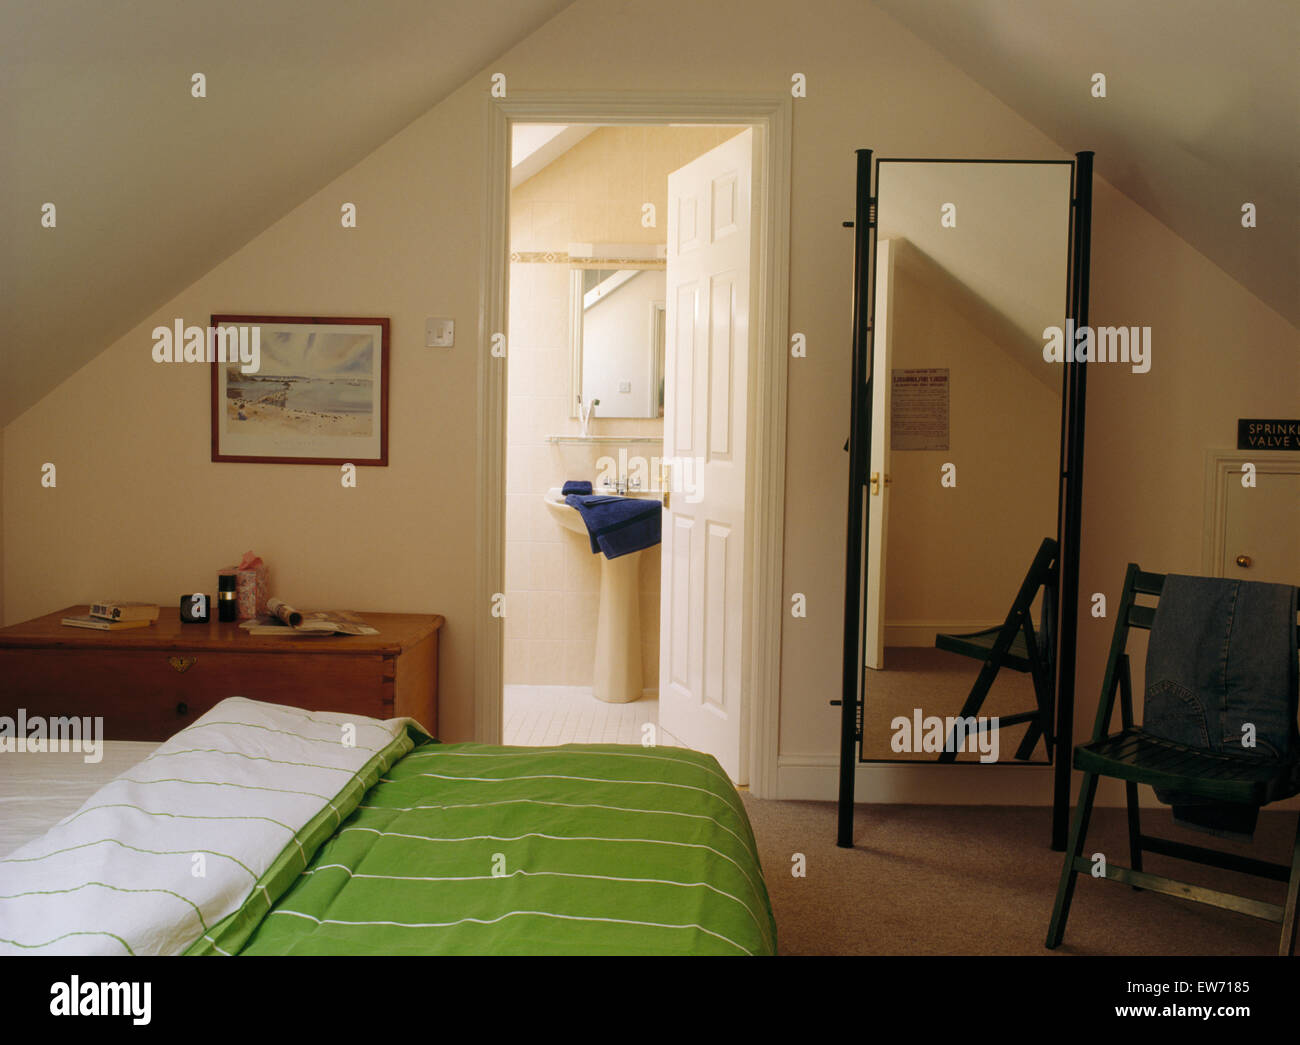 Cheval mirror and bed with green duvet in eighties attic bedroom with door open to en-suite bathroom Stock Photo